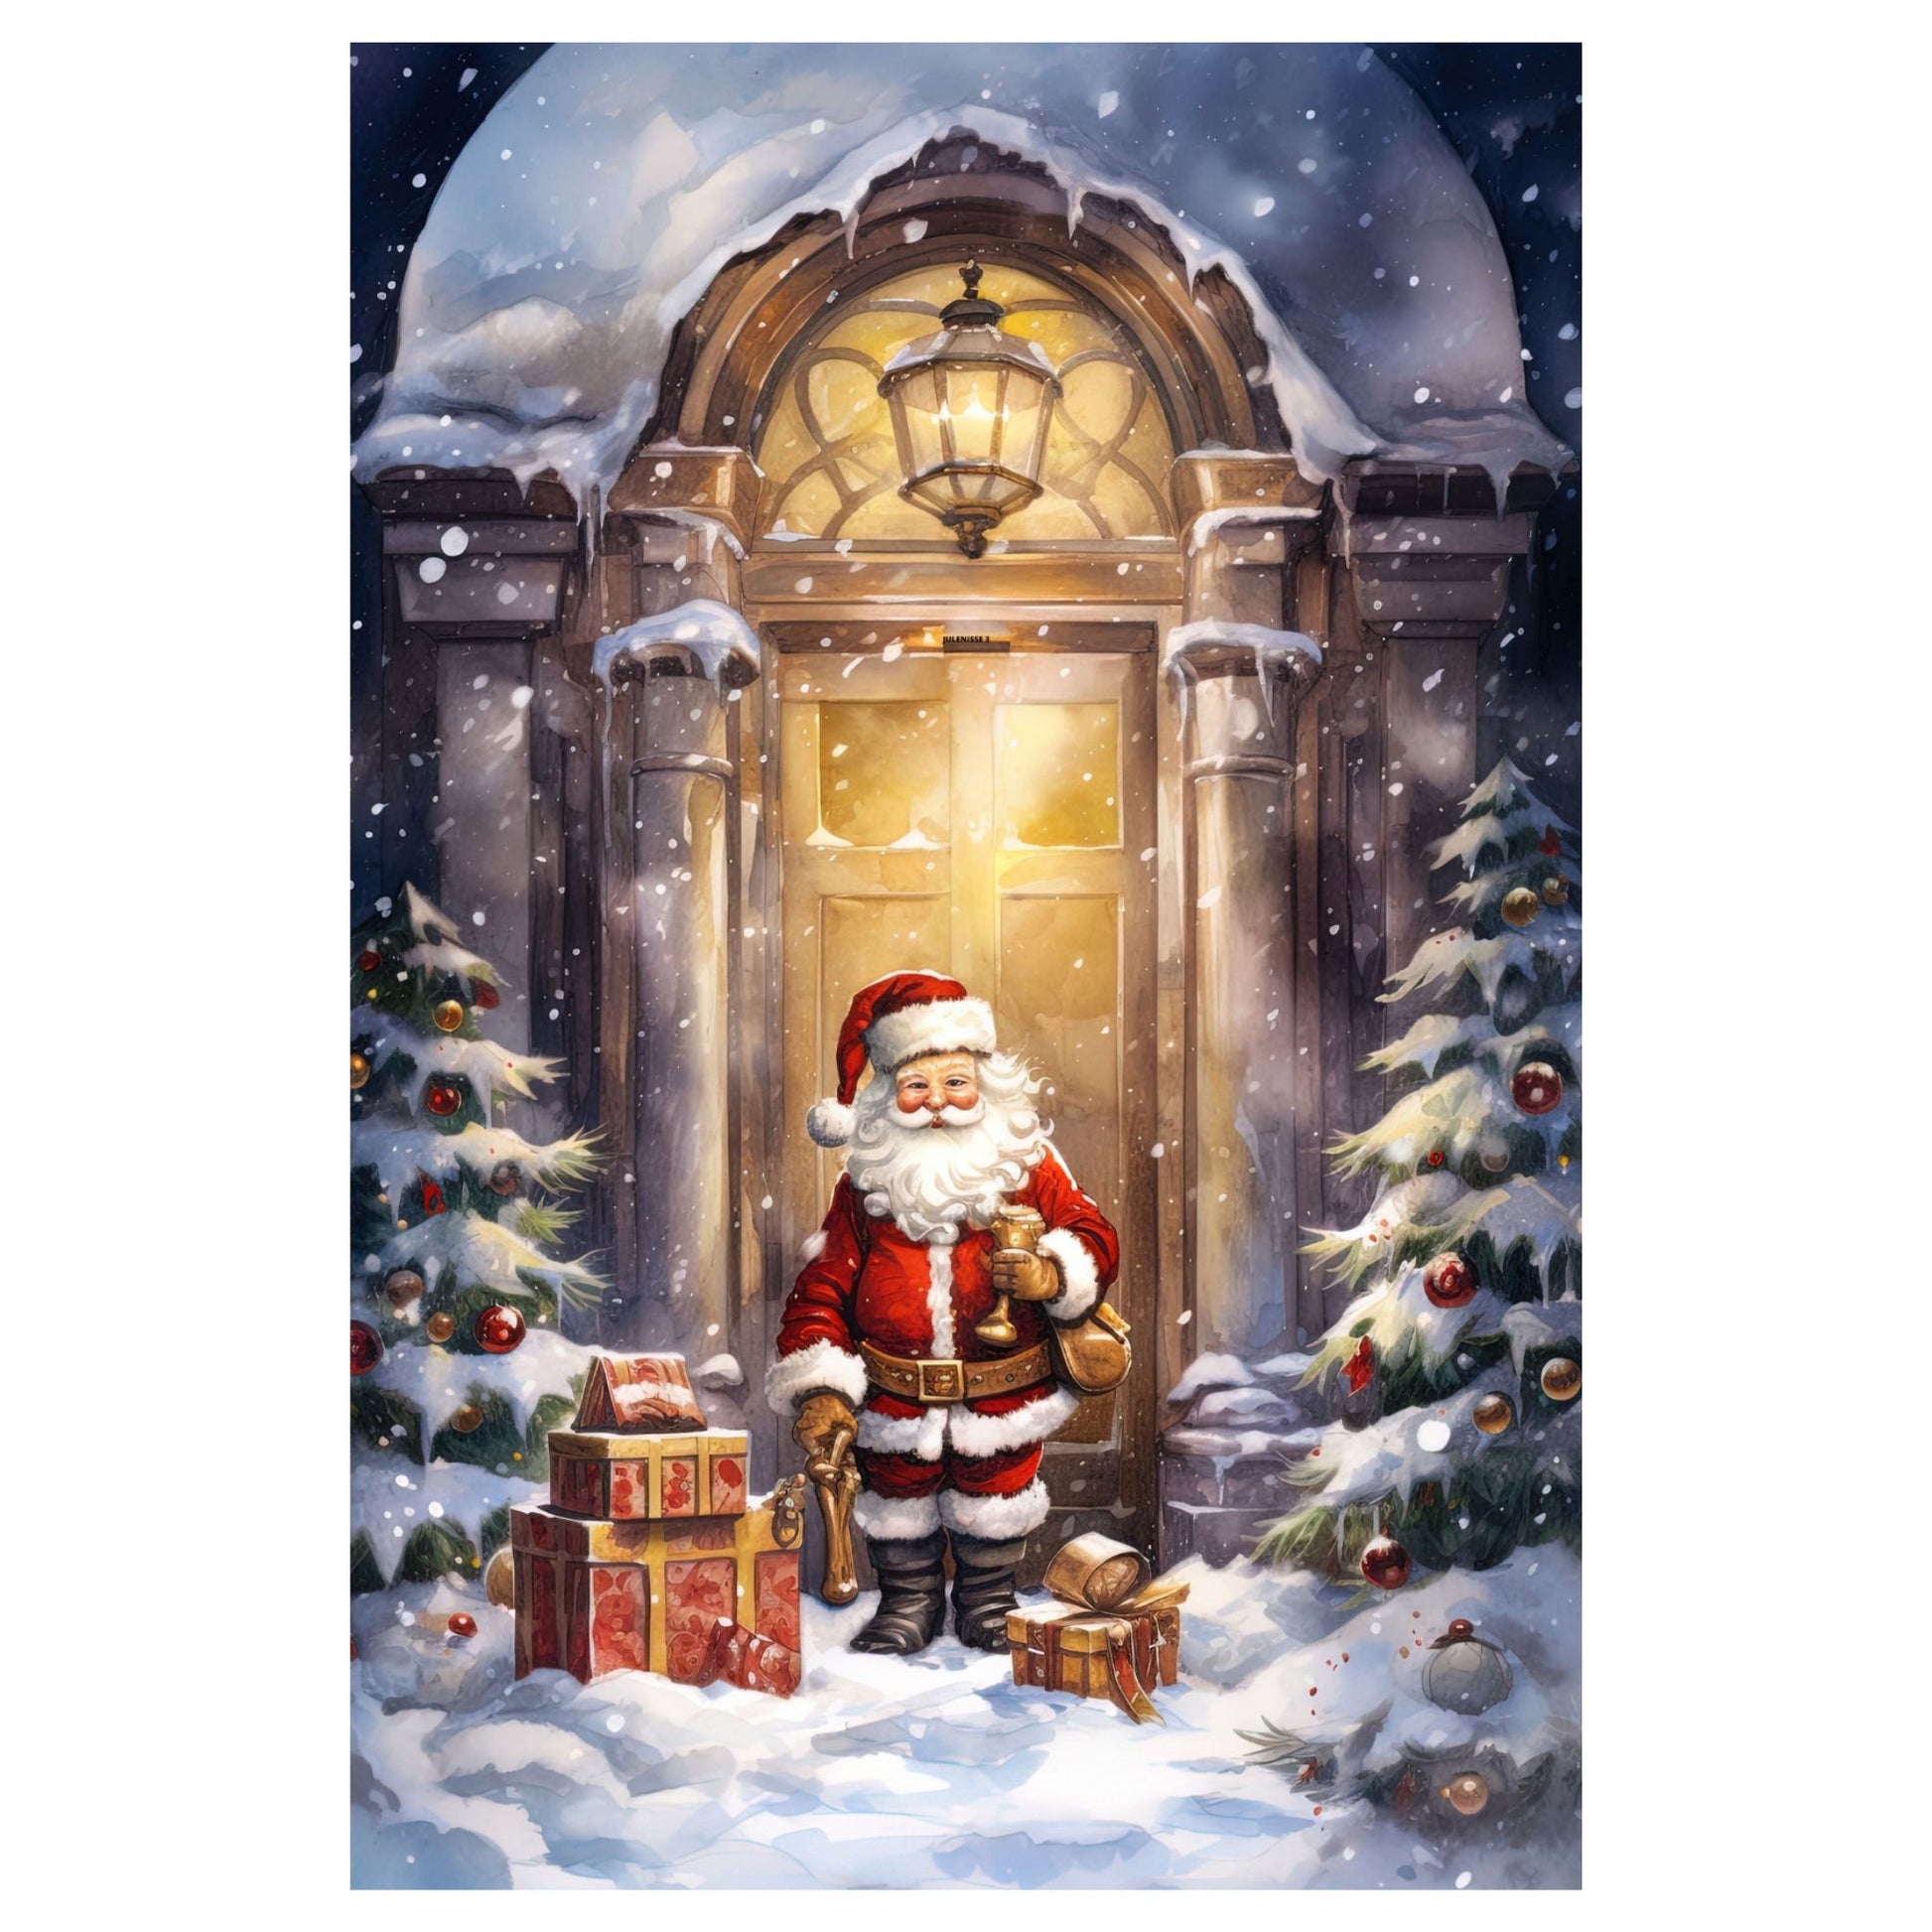 Dekorativt, grafisk julekort av en julenisse som kommer med julepakker. Motivet har et nostalgisk preg.